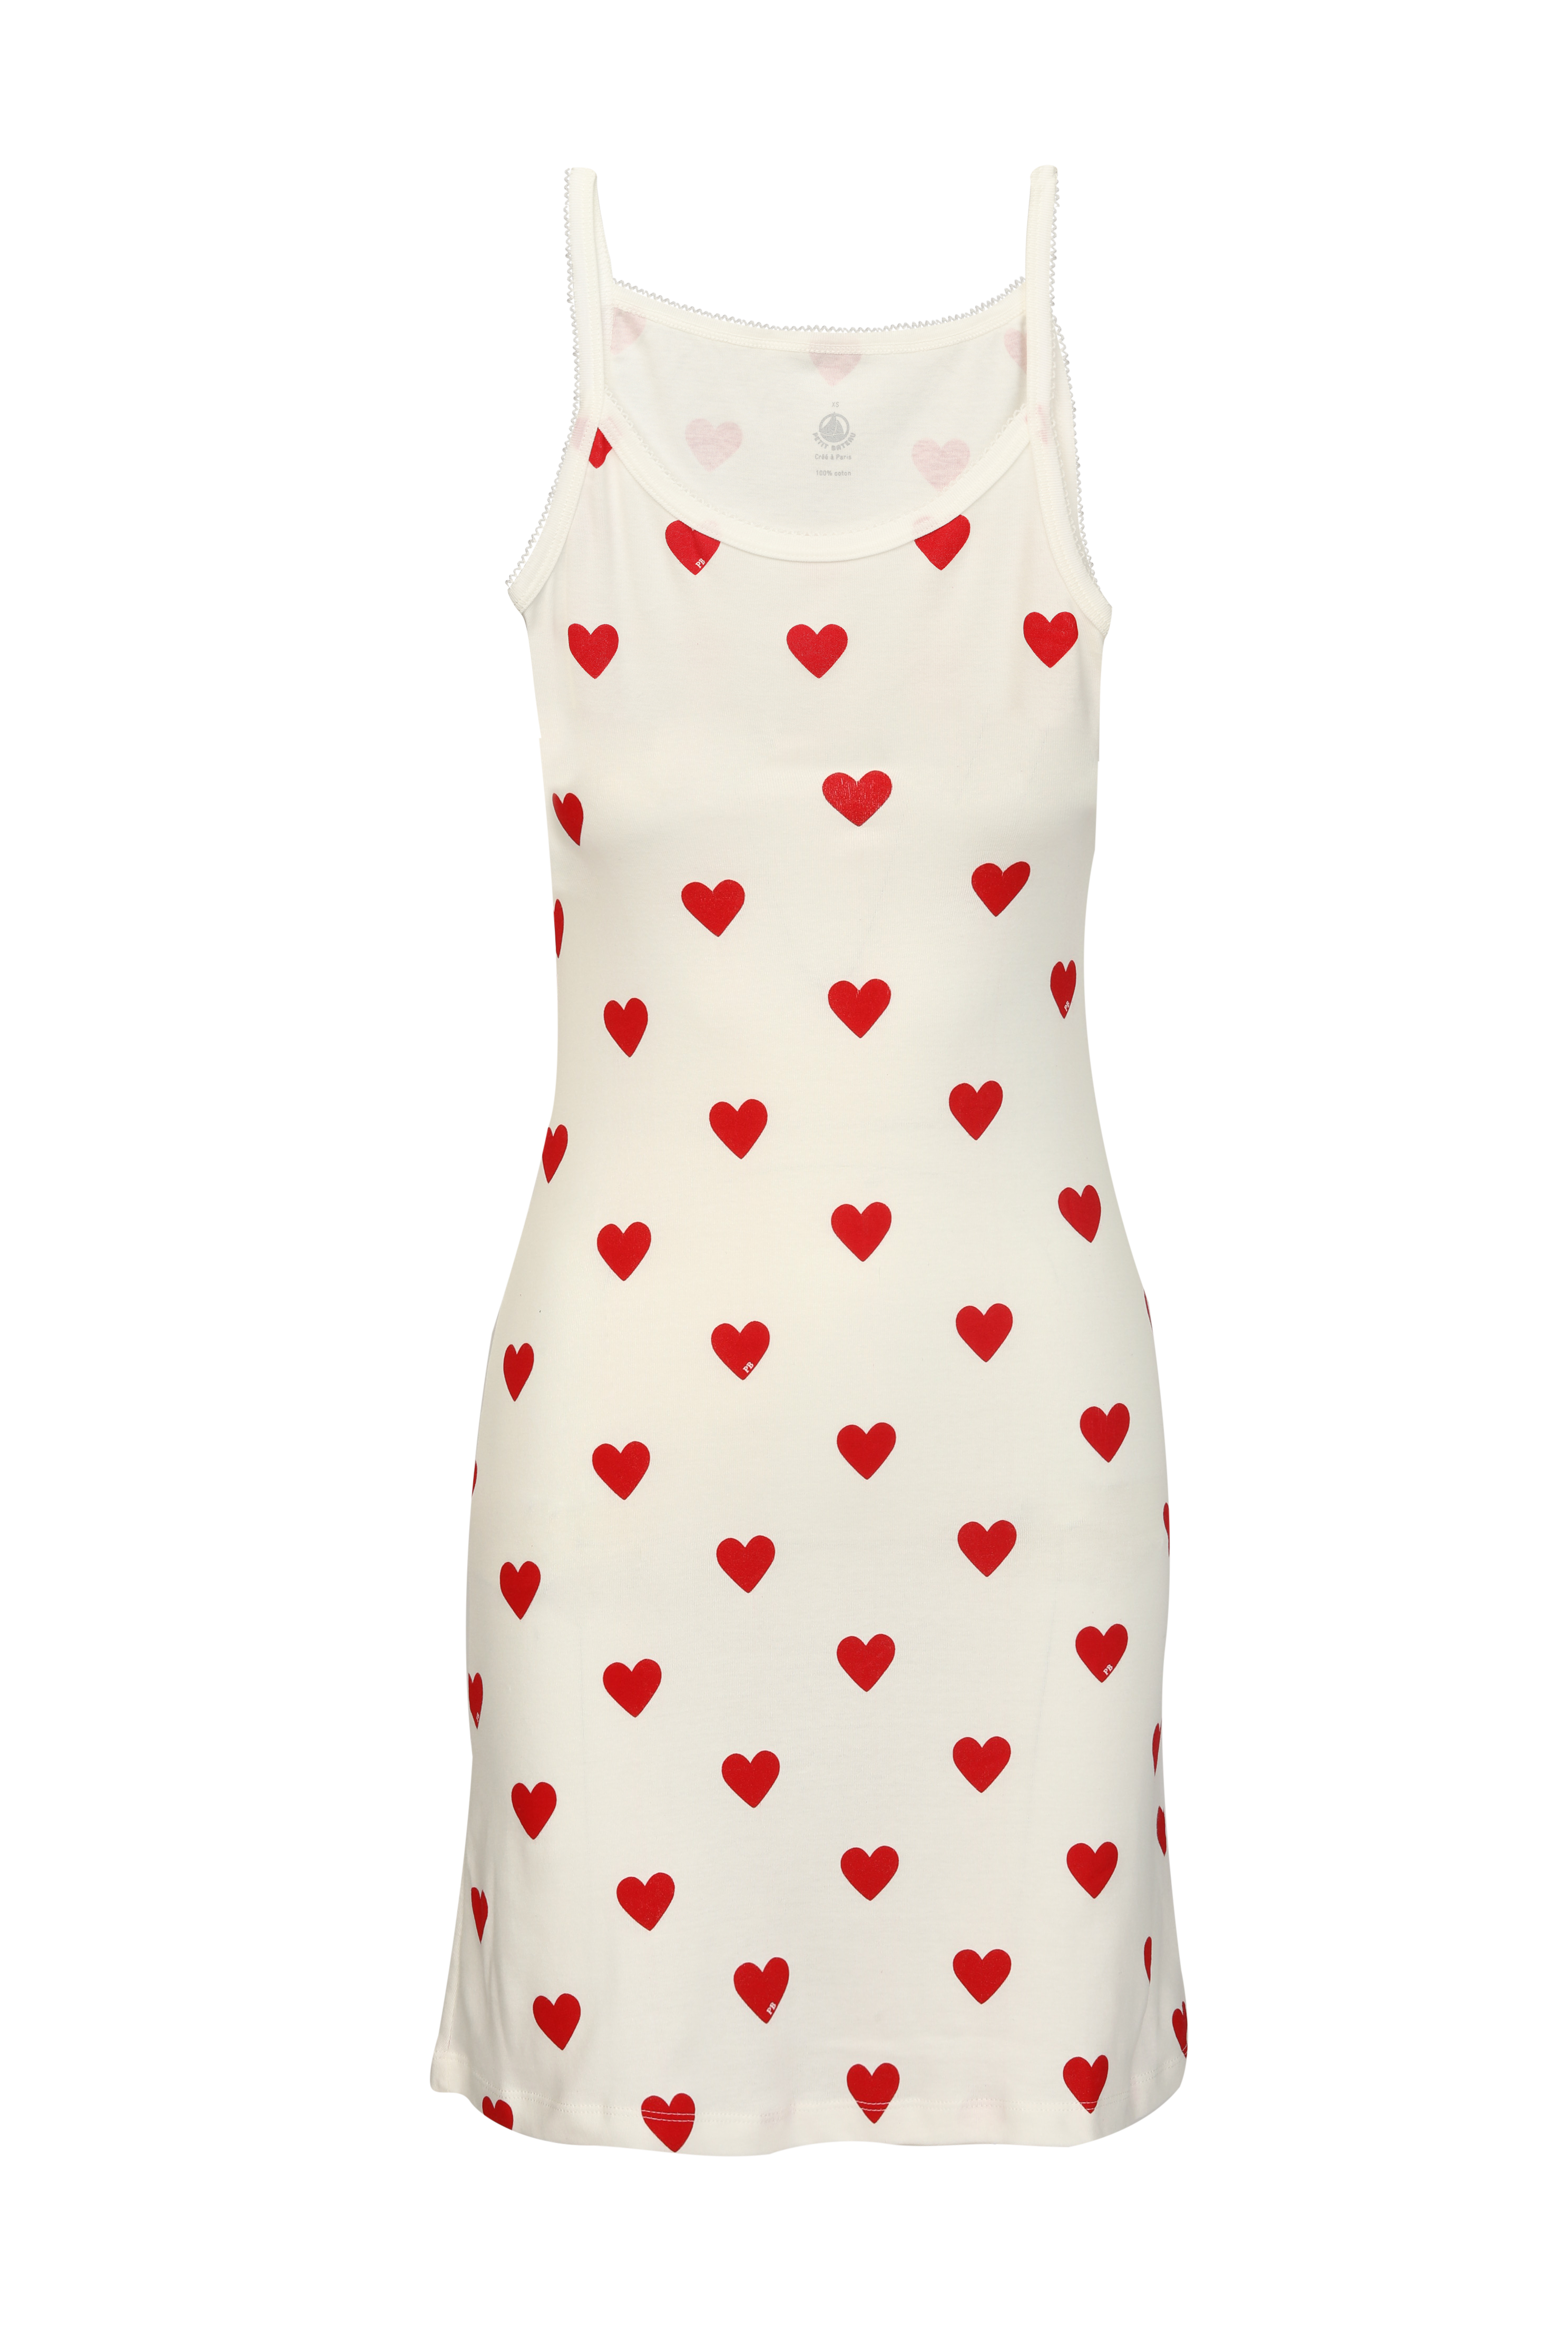 שמלה אייקוניק לבבות בלבן ואדום PETIT BATEAU